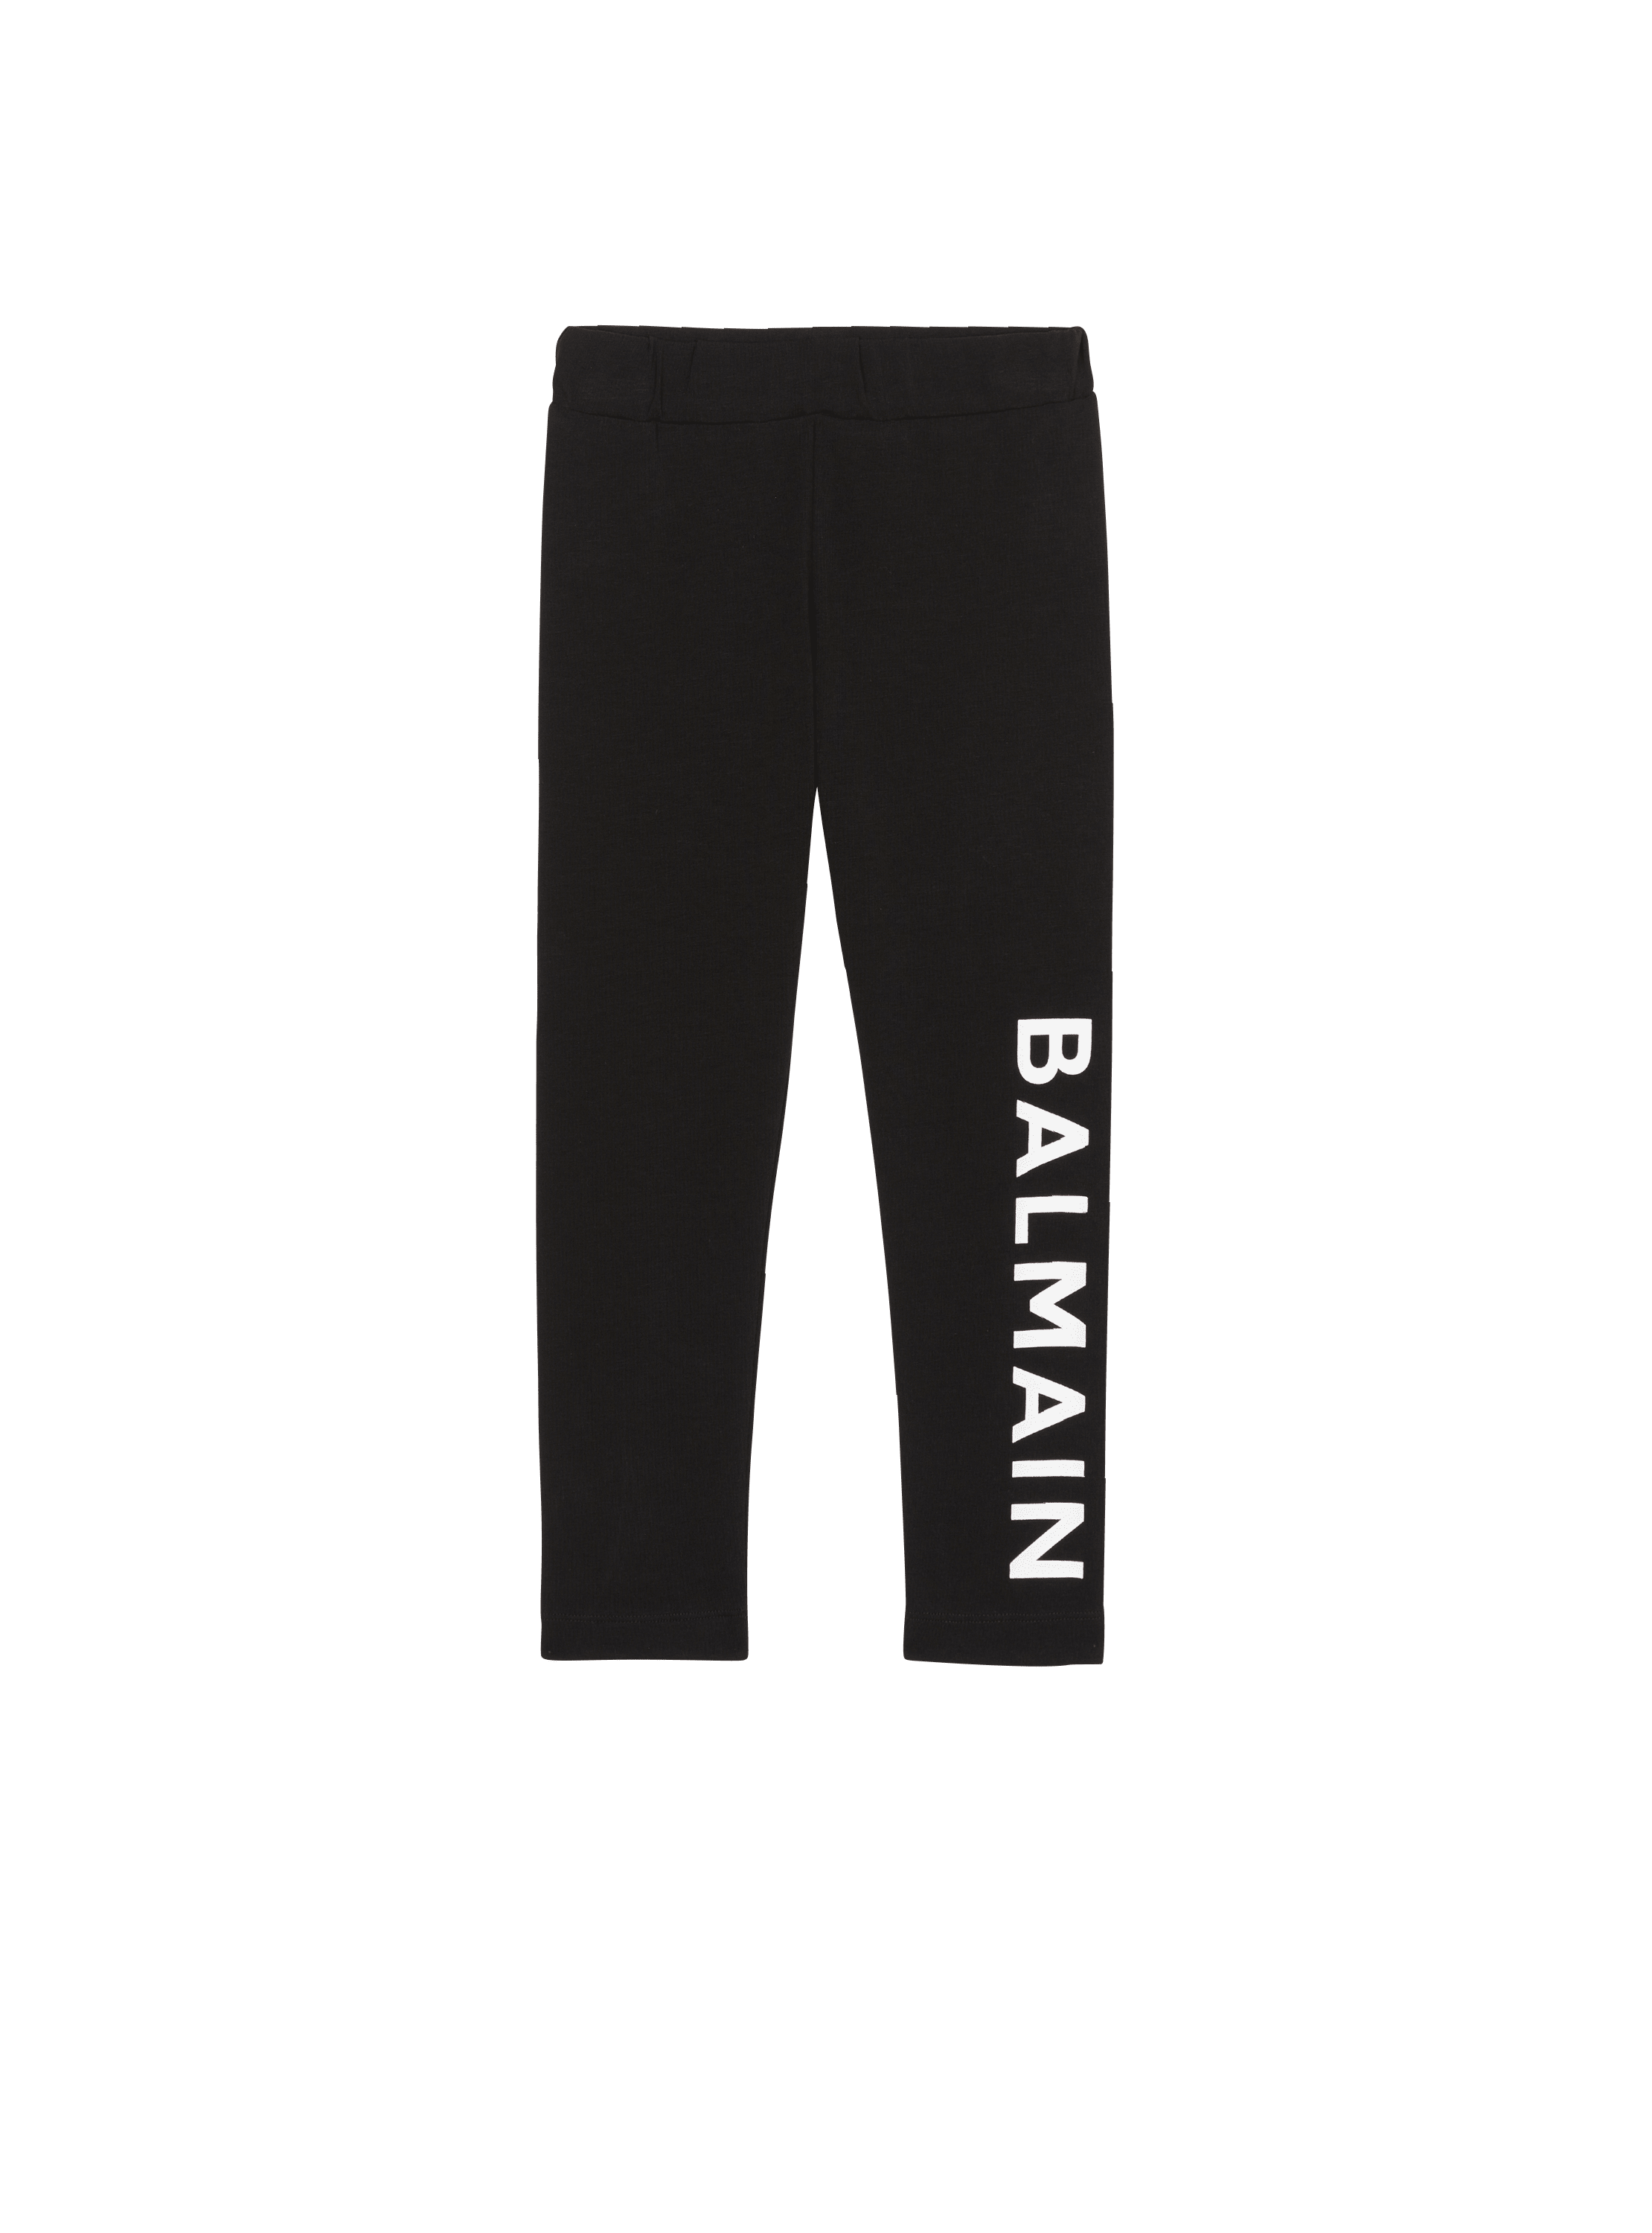 Balmain printed leggings